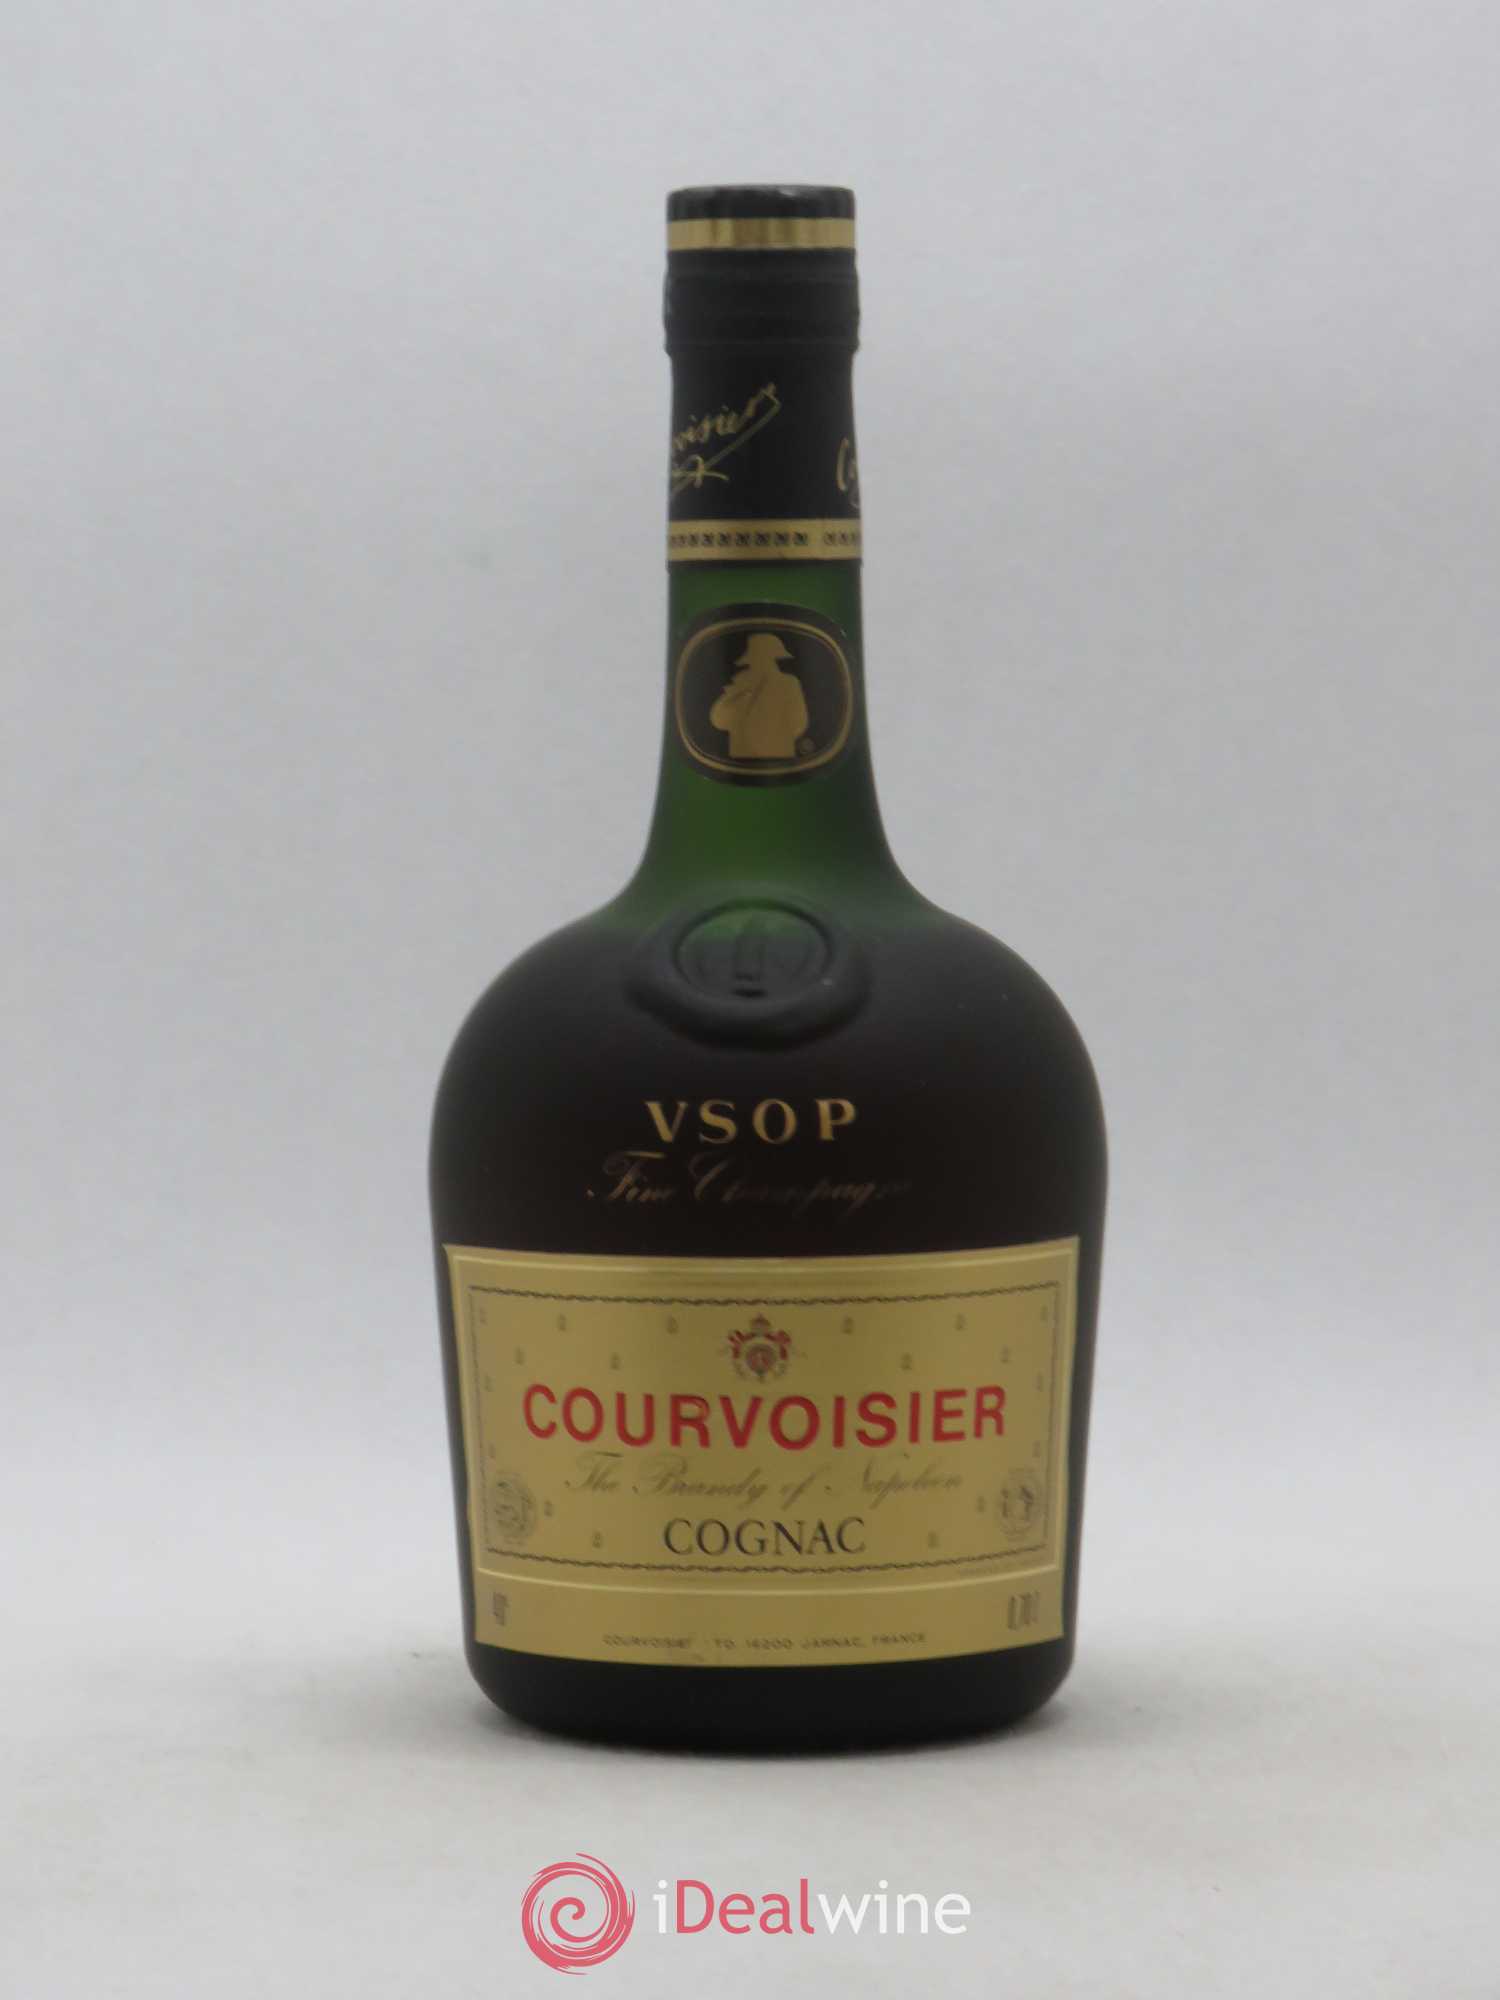 fine champagne VSOP 4 2 pubs presse cognac courvoisier : 3 etoiles napoleon 